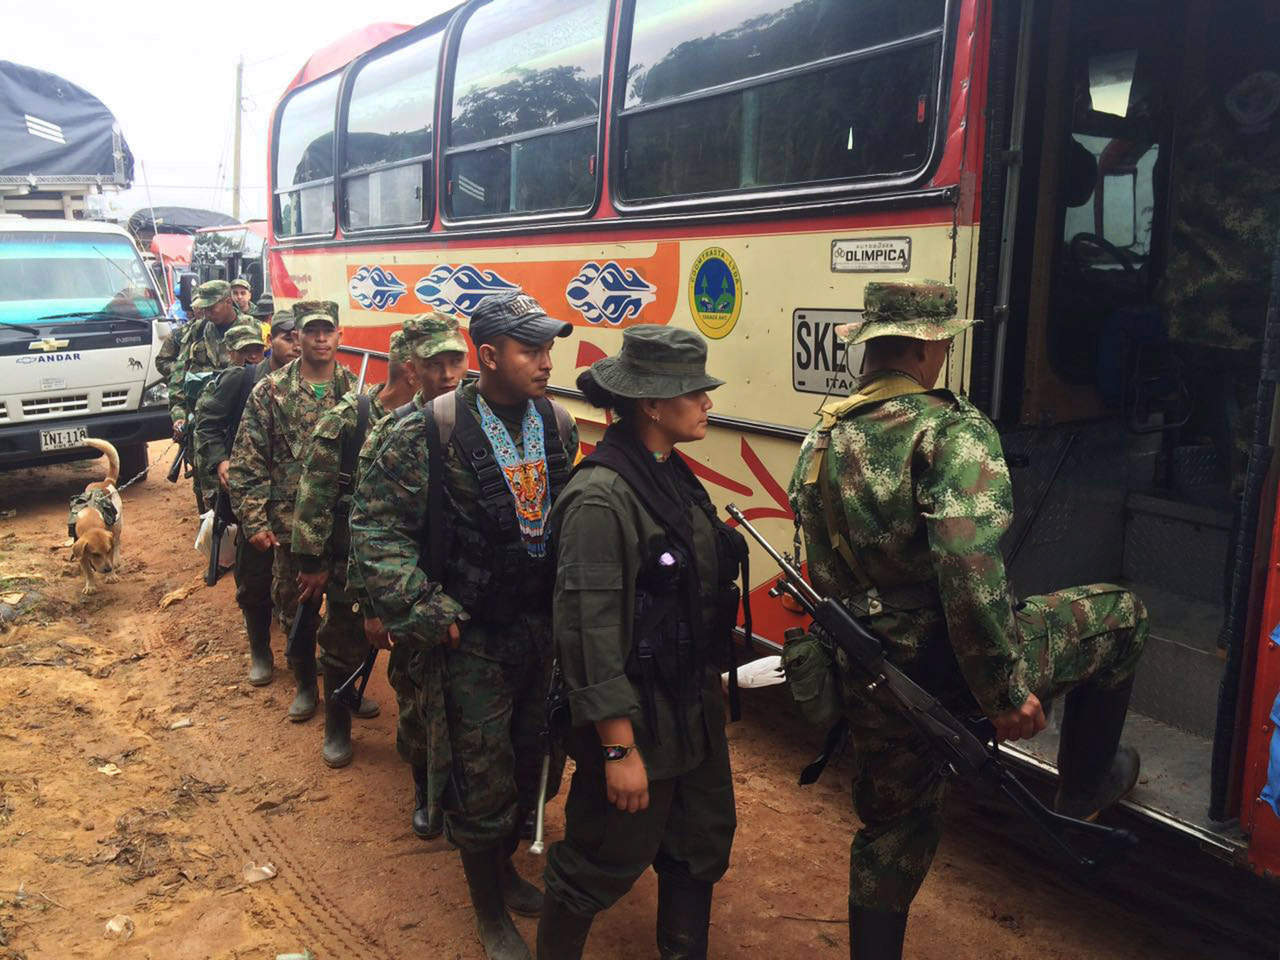 Los rebeldes, del Frente 30 'Rafael Aguilera' con presencia en el suroeste de Colombia, llegaron en lanchas y fueron recibidos por lugareños que se agolparon en el muelle agitando banderas blancas. (ARCHIVO)